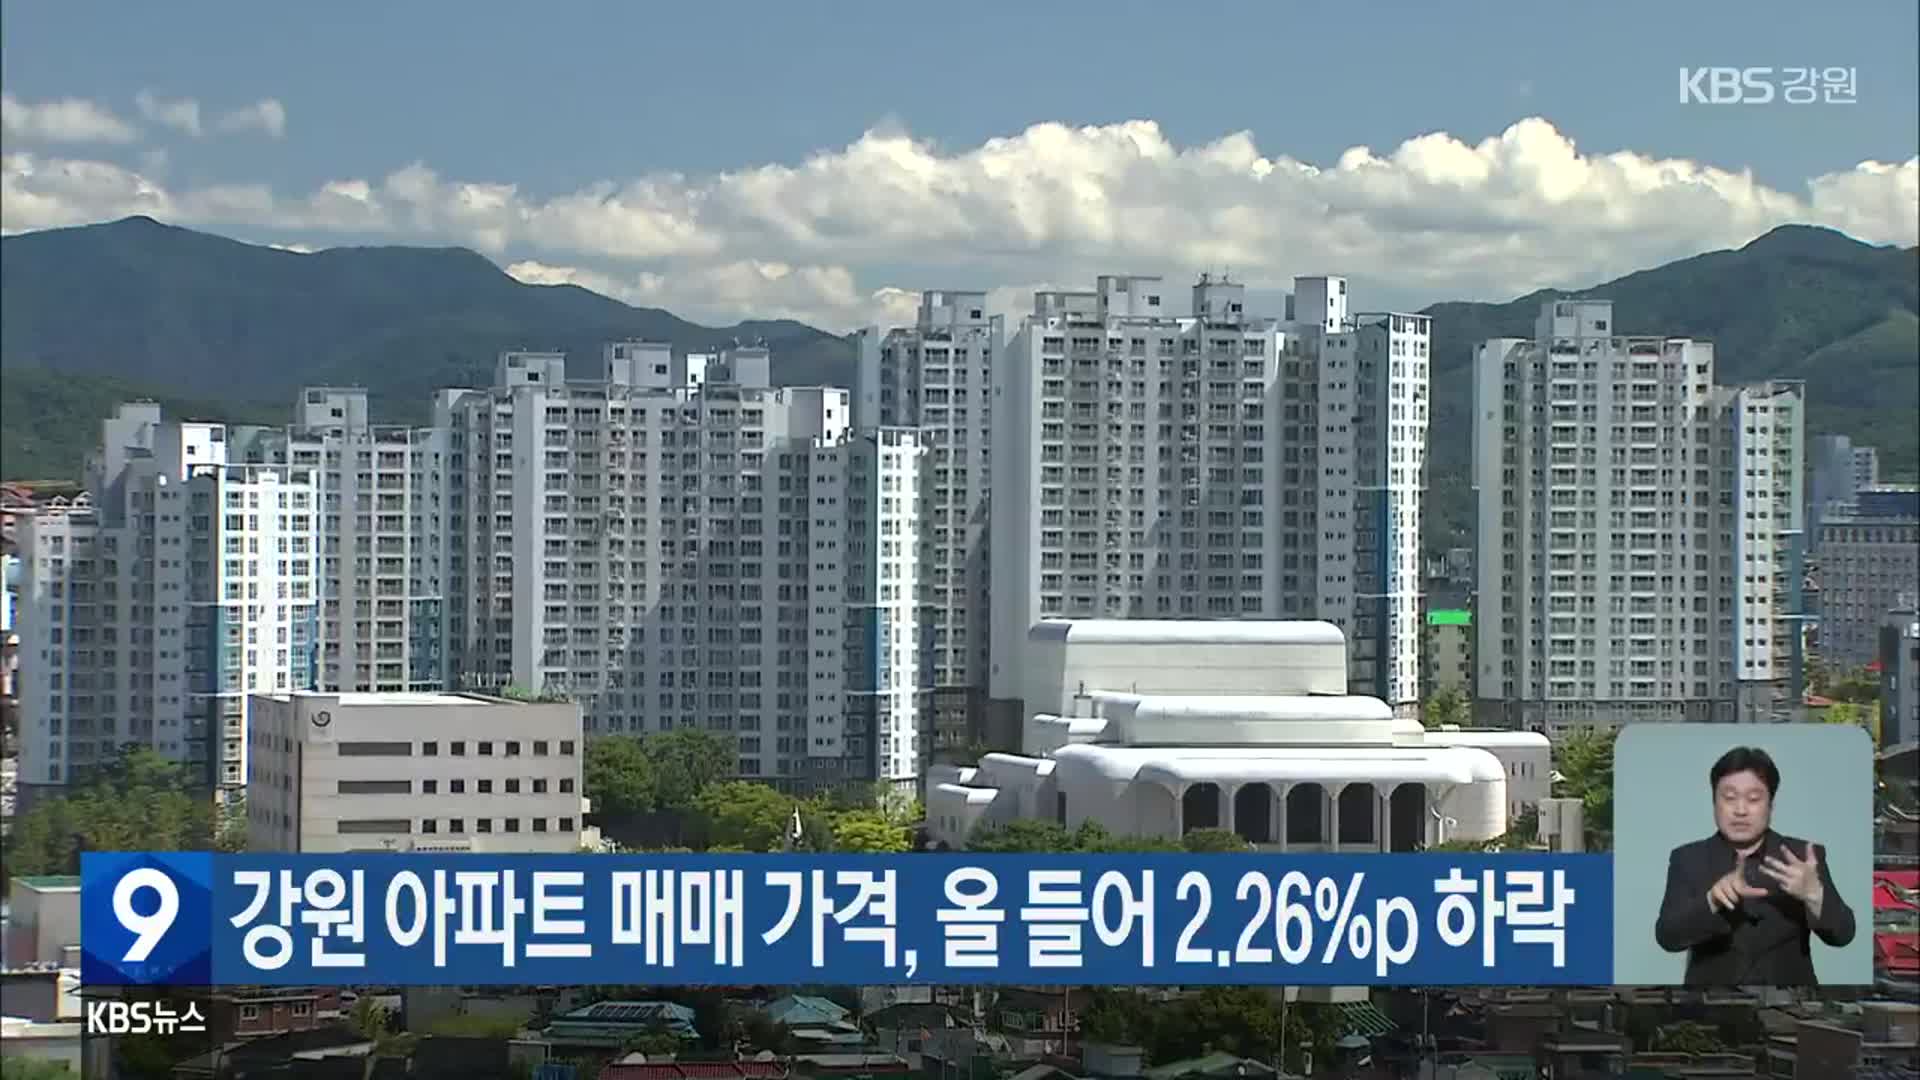 강원 아파트 매매 가격, 올 들어 2.26%p 하락